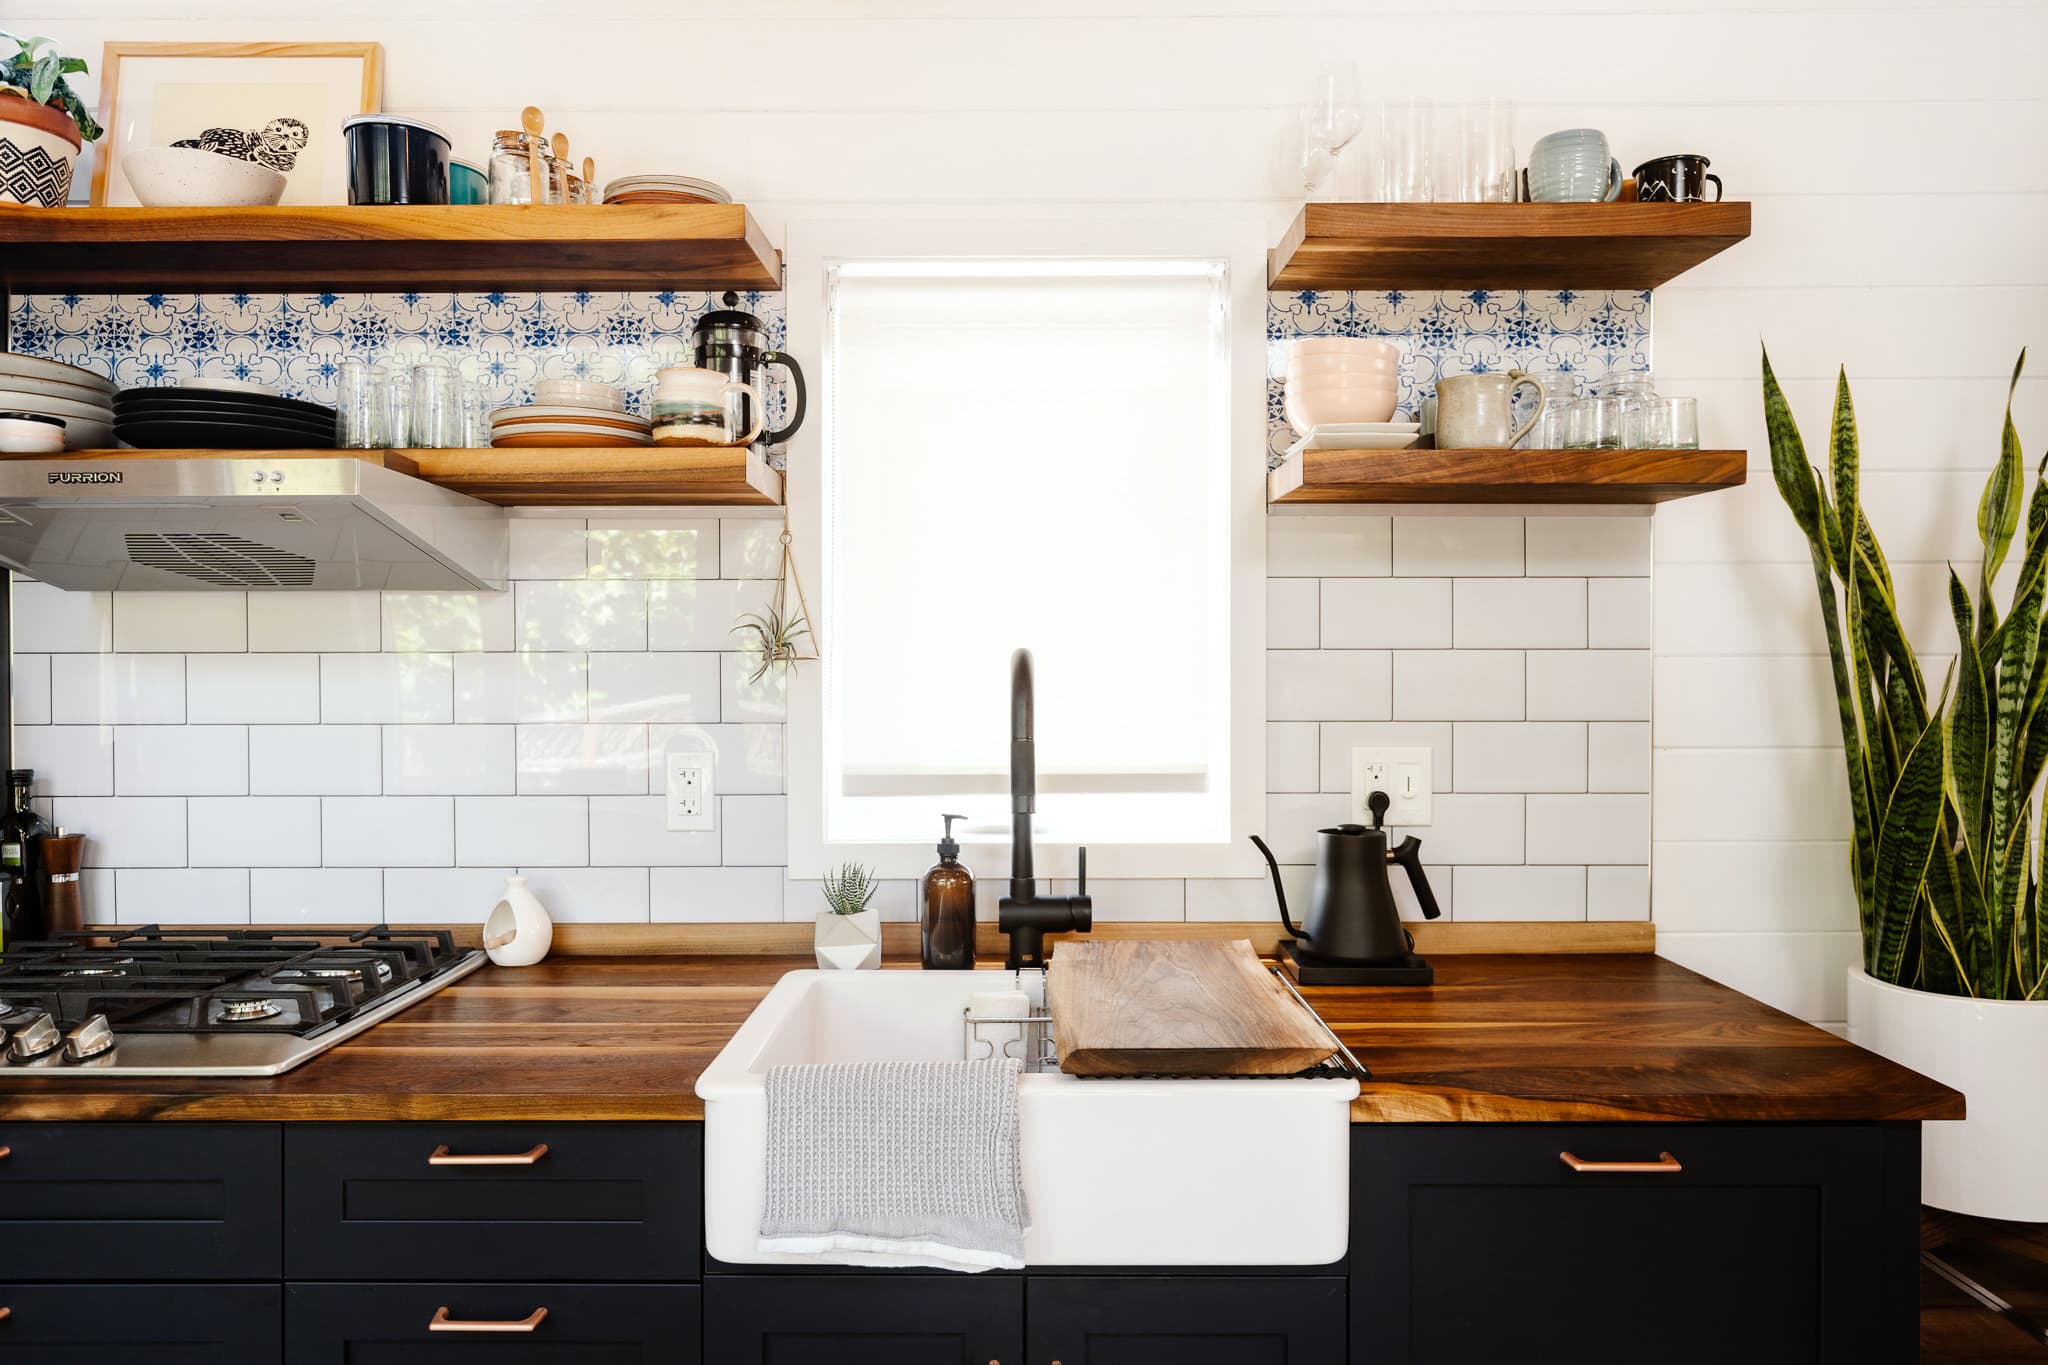 20 Best Small Kitchen Storage & Design Ideas   Kitchn